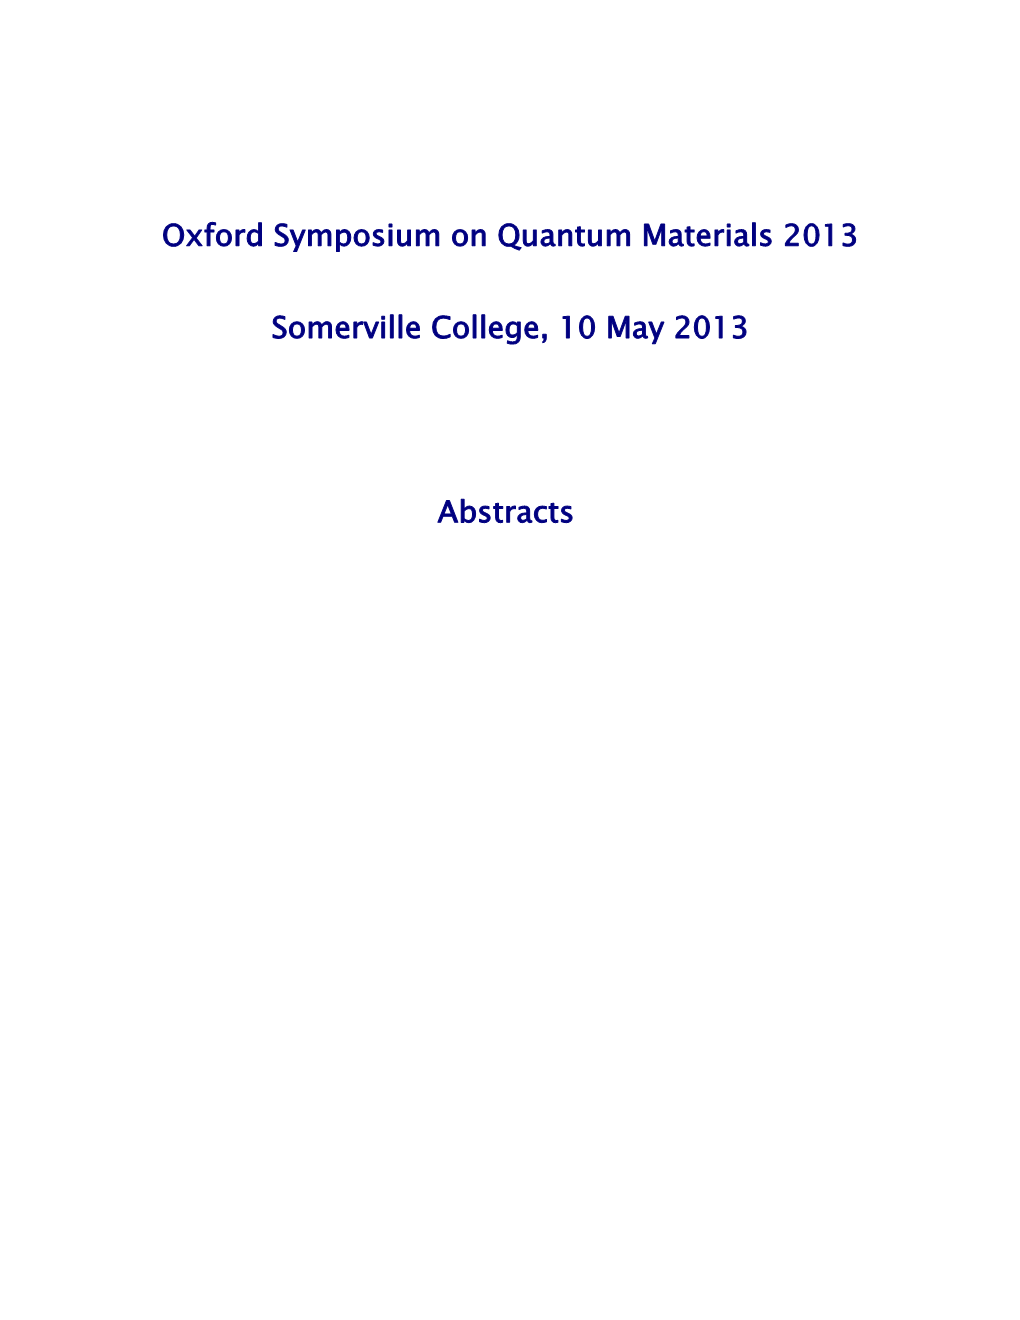 Oxford Symposium on Quantum Materials 2011